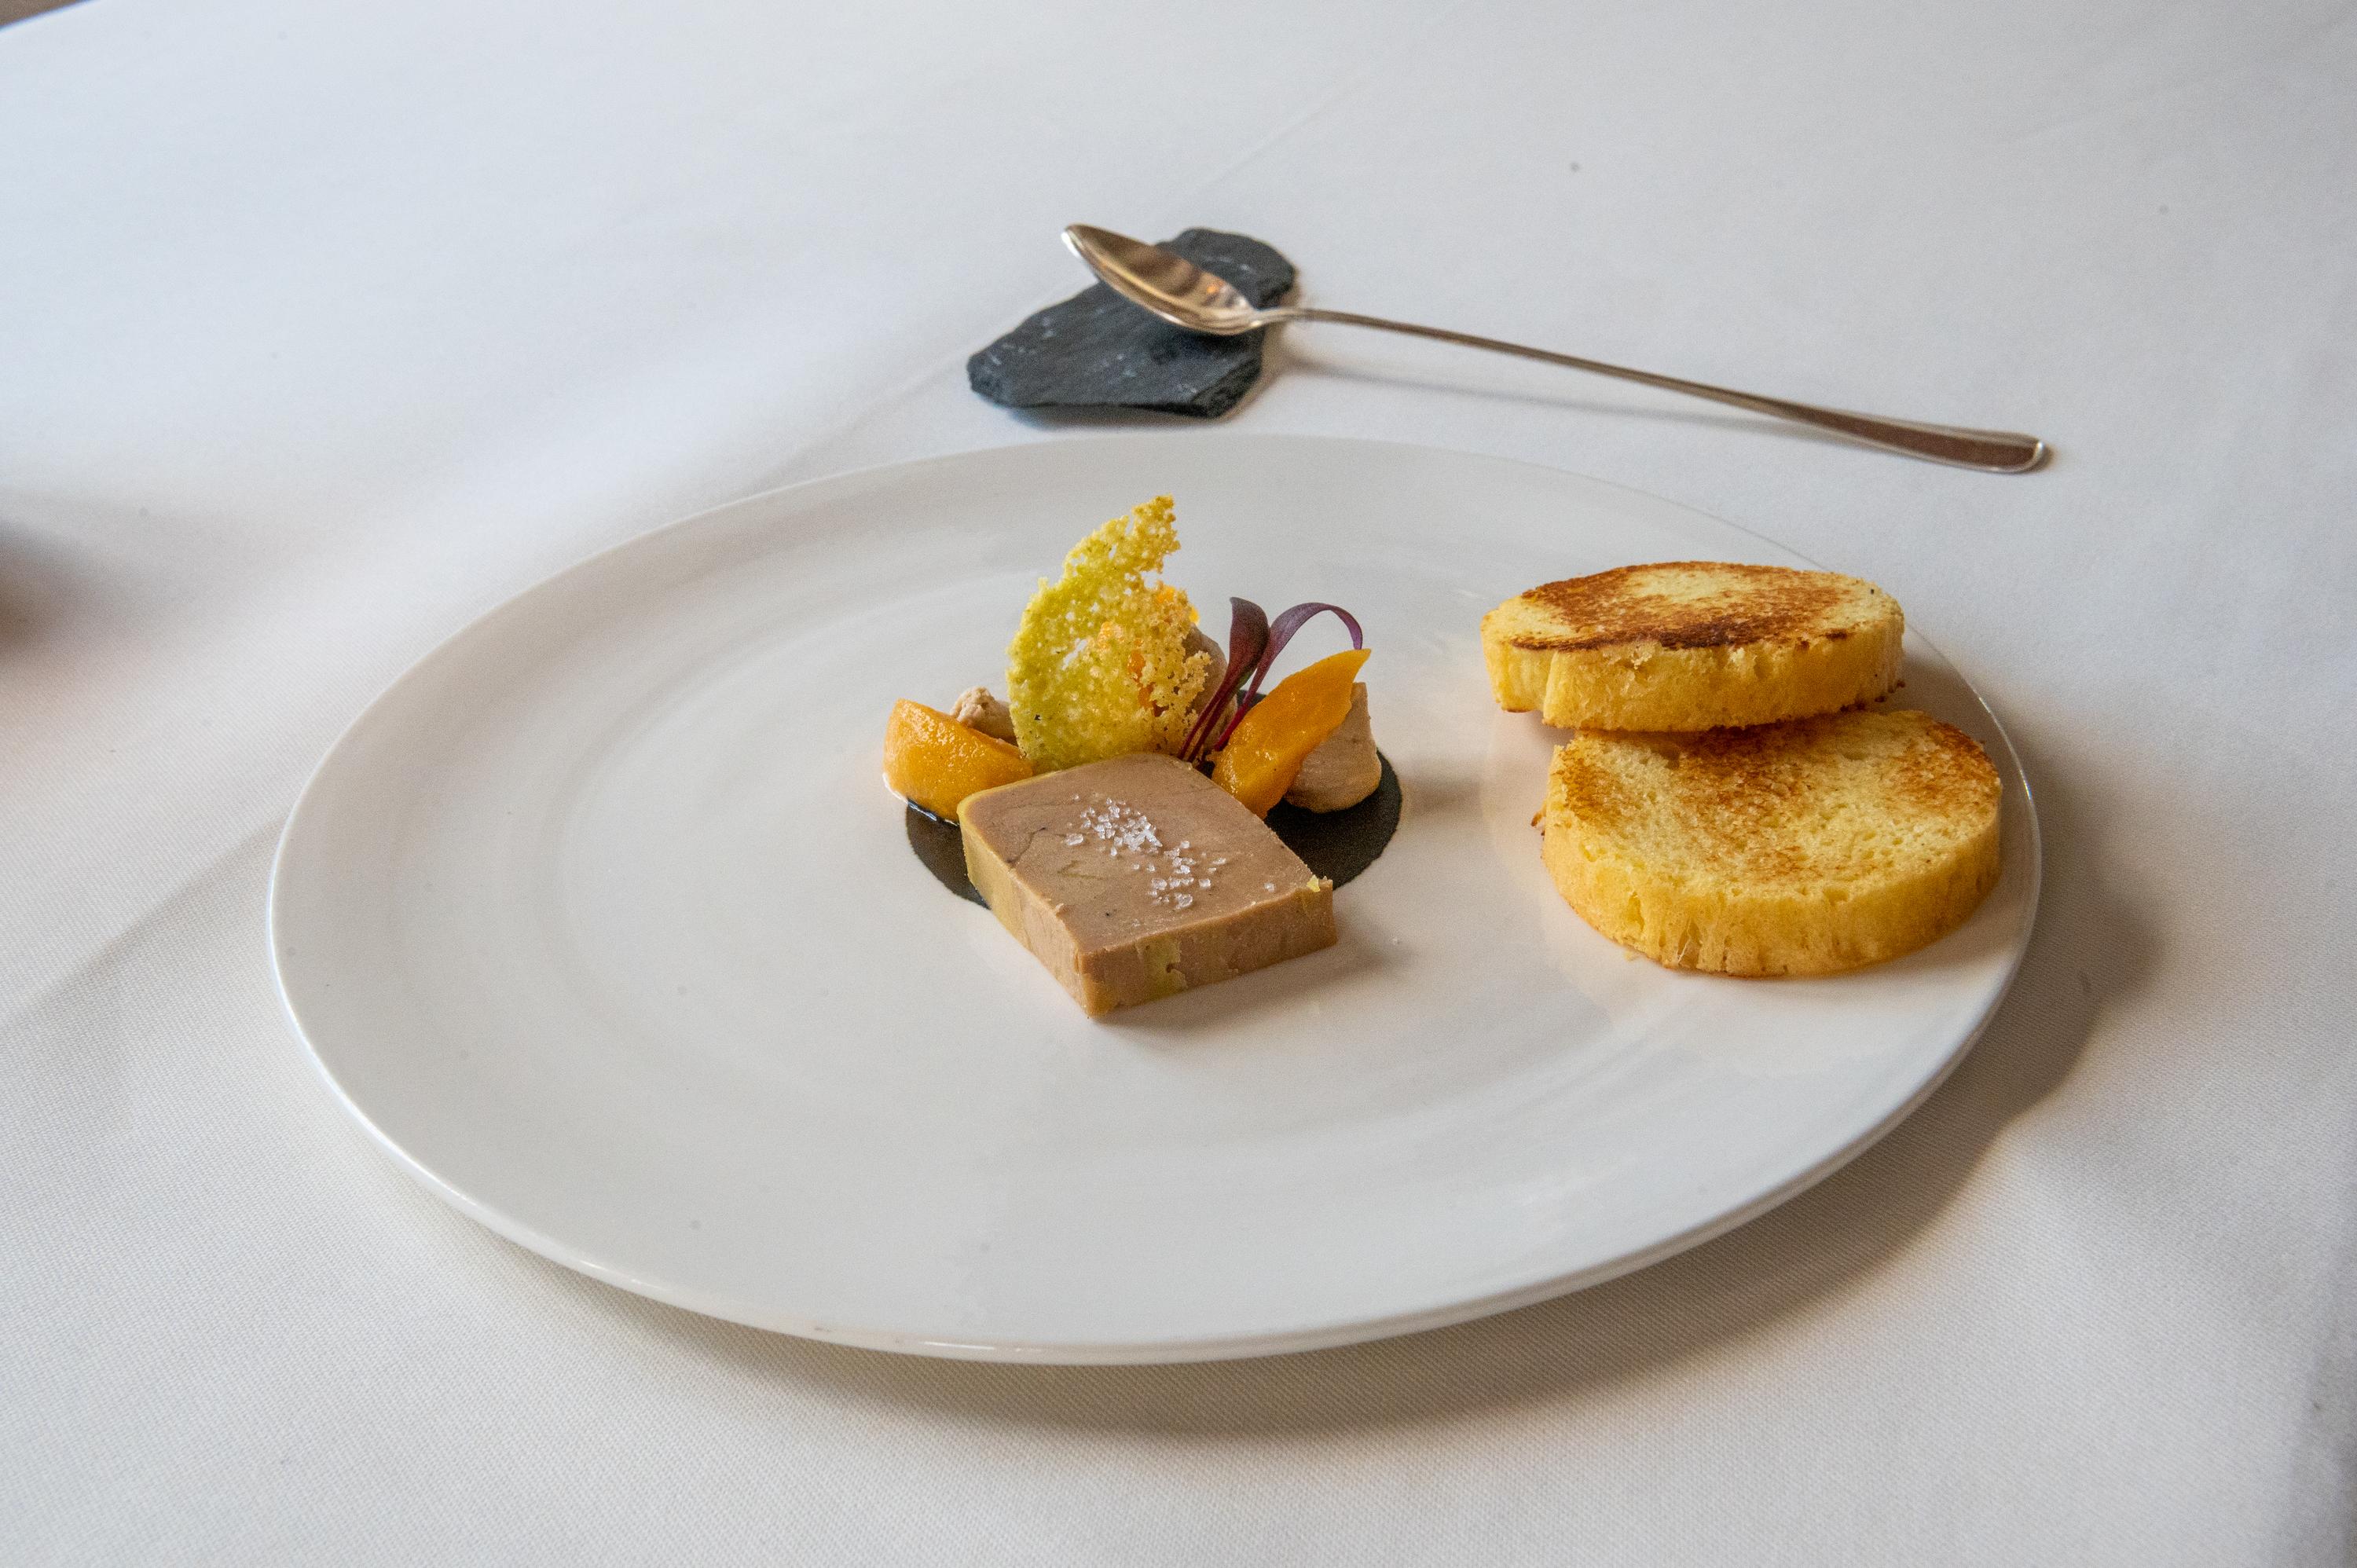 Terroir : du foie gras sans gavage ! 